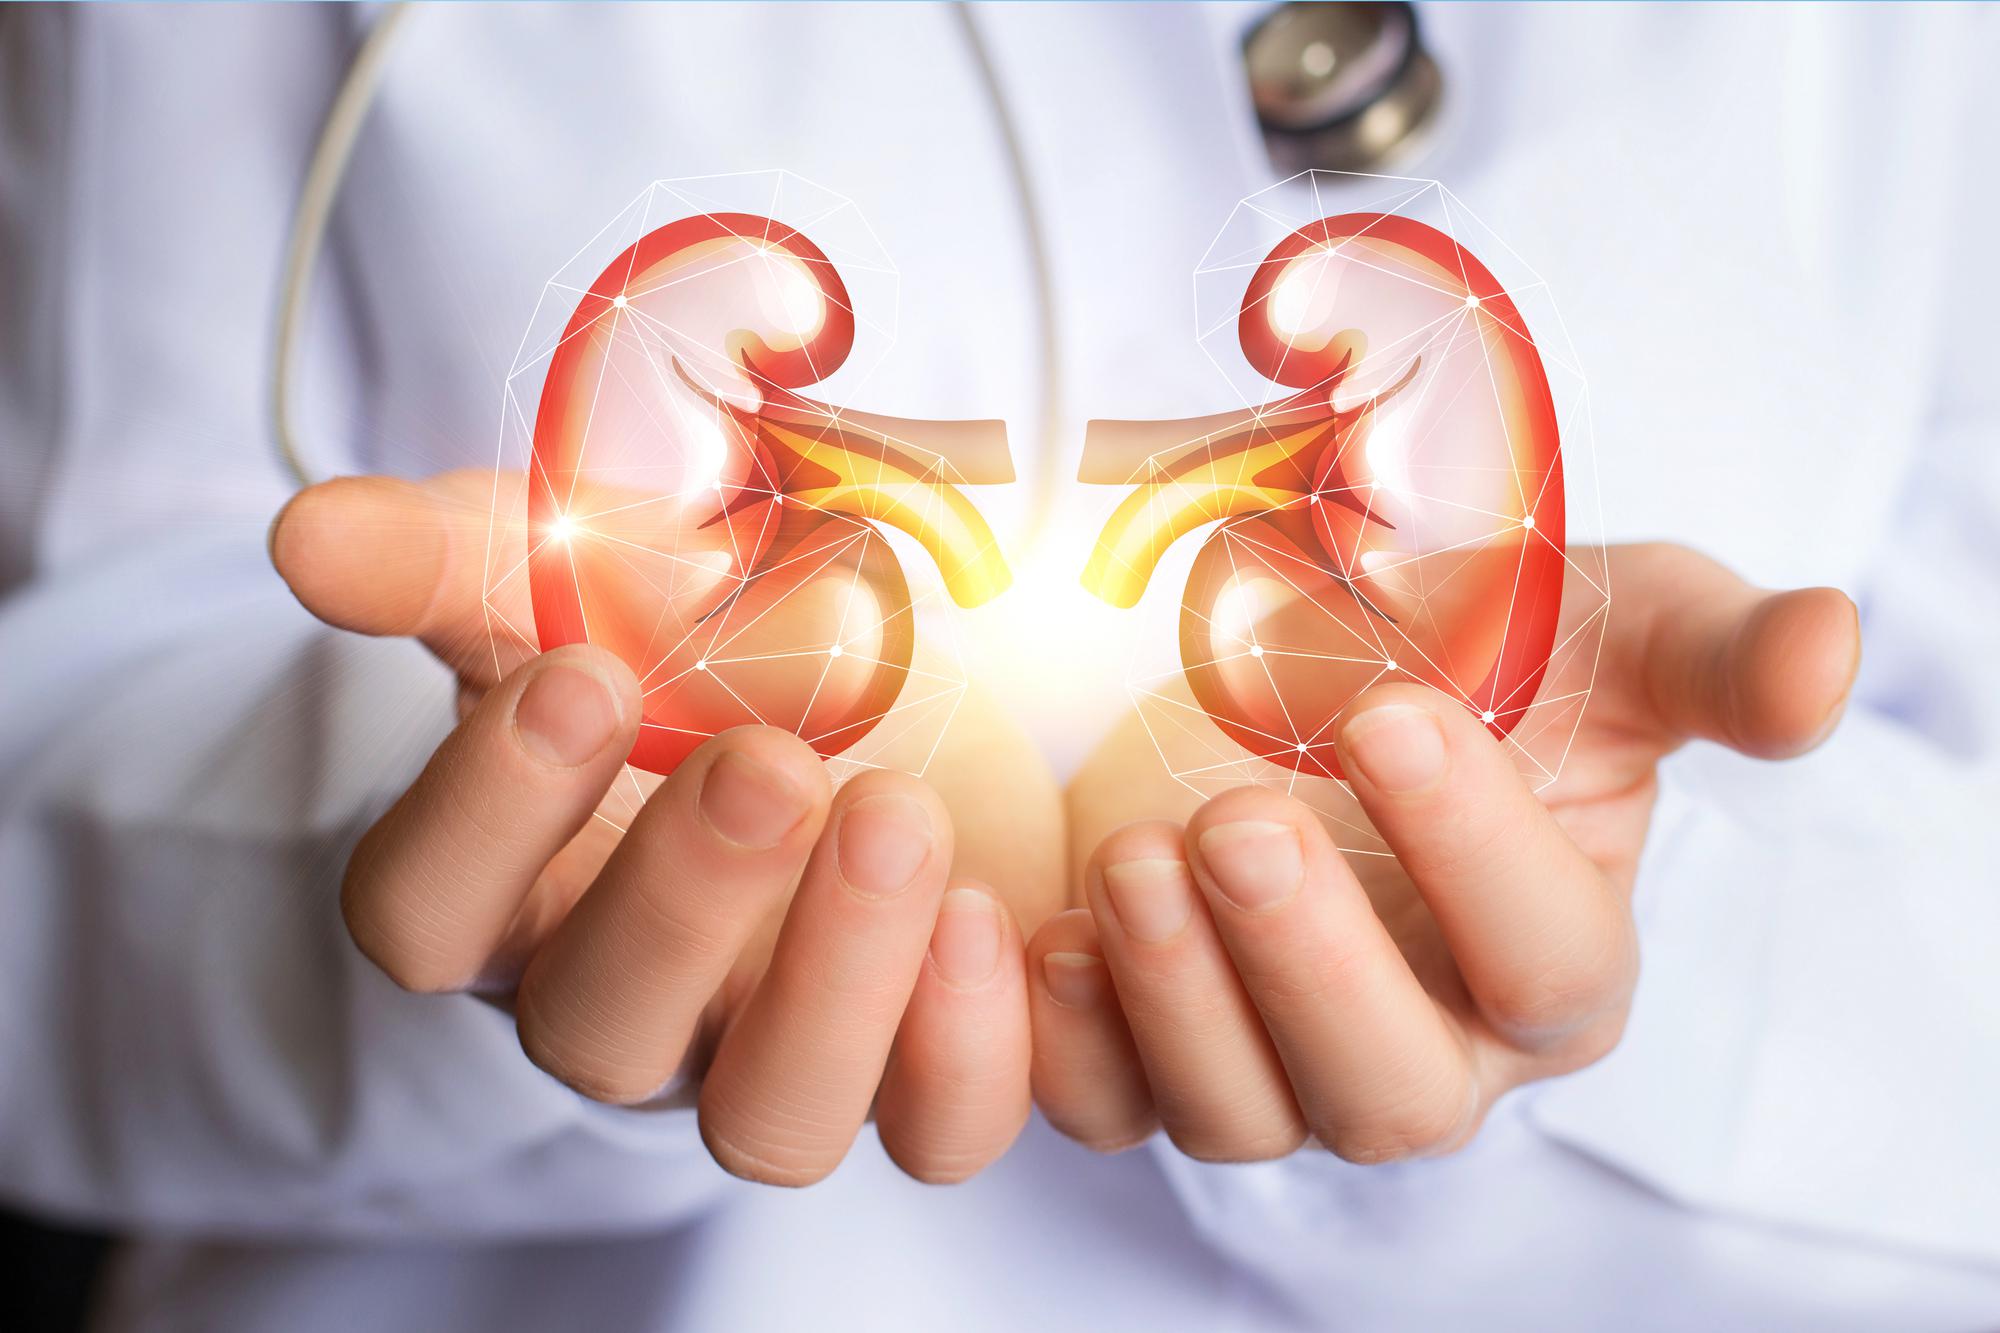 kidneys in hands